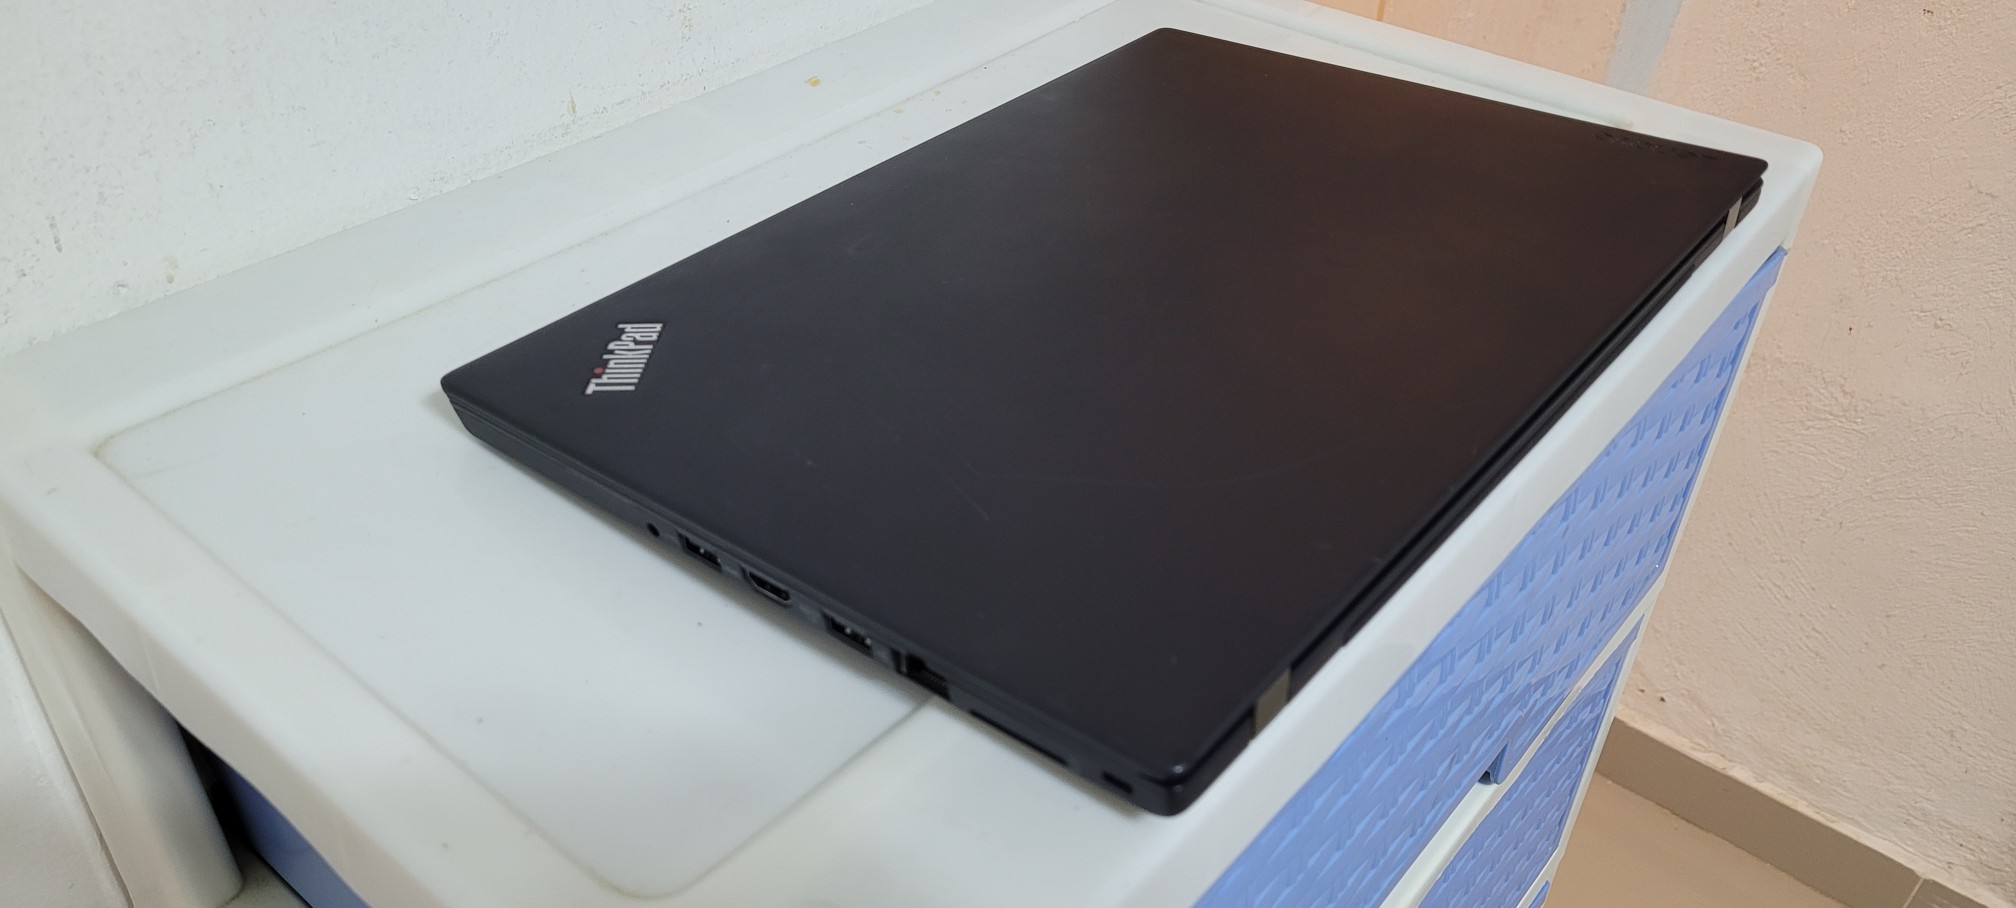 computadoras y laptops - Lenovo Slim t470 14 Pulg Core i7 7ma Ram 12gb Disco 256gb SSD Video 6GB 2